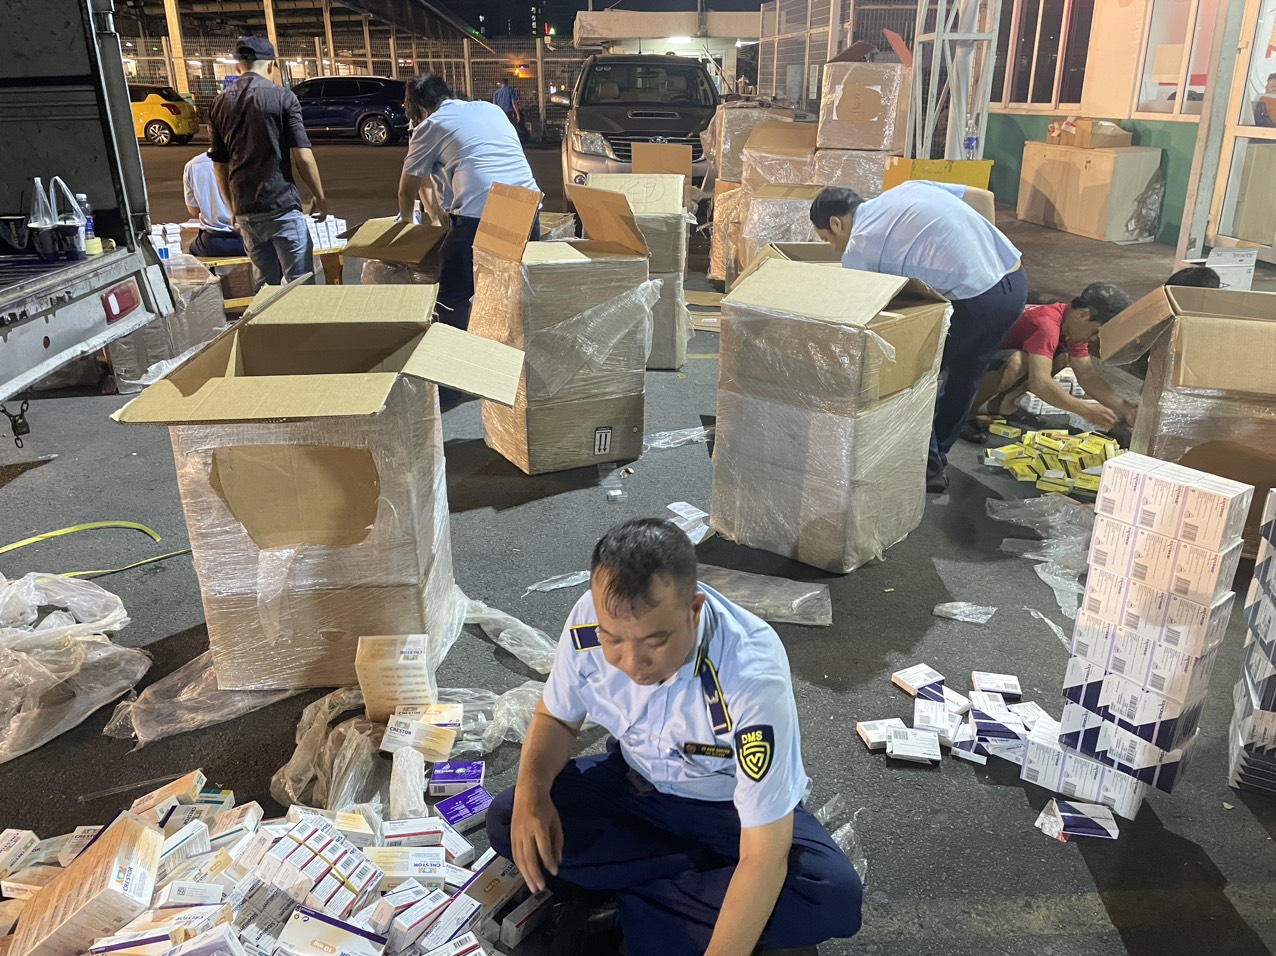 Phát hiện hơn 18.000 hộp tân dược không rõ nguồn gốc tại kho quốc nội sân bay Tân Sơn Nhất- Ảnh 1.